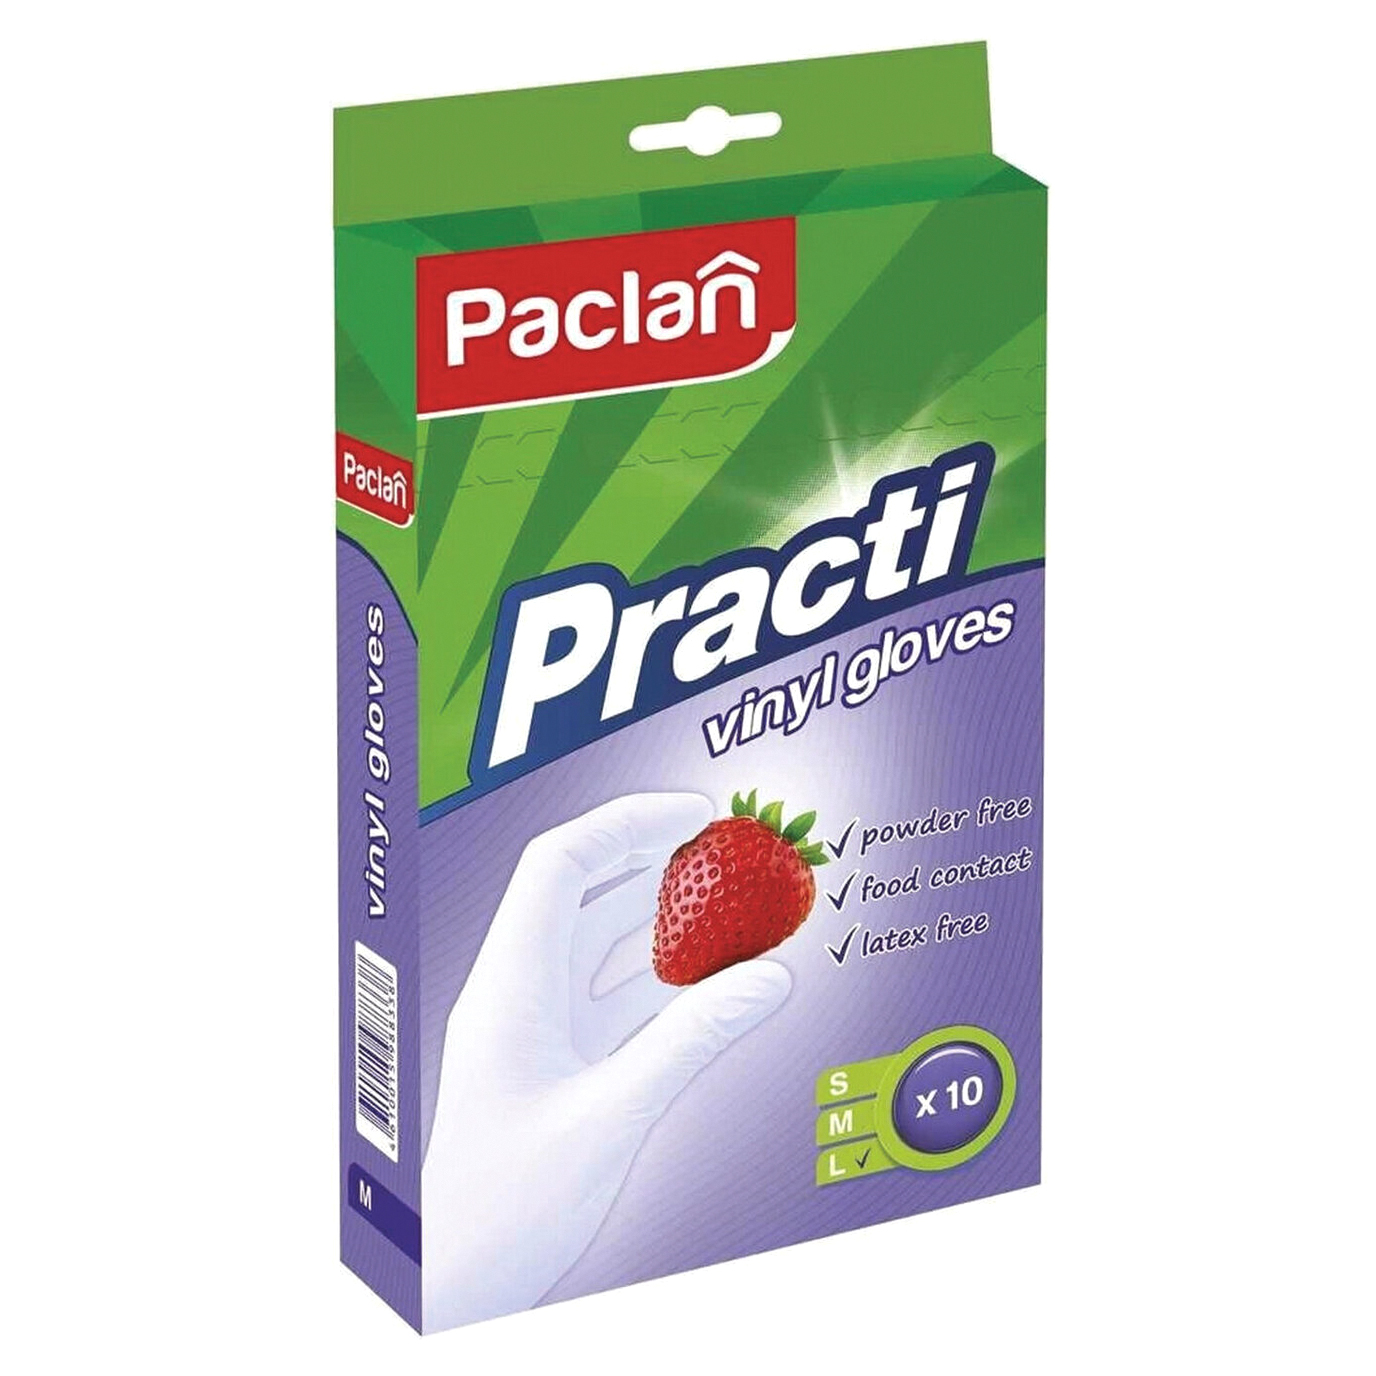 перчатки paclan виниловые размер m 100 шт Перчатки Paclan Practi виниловые L 10 шт